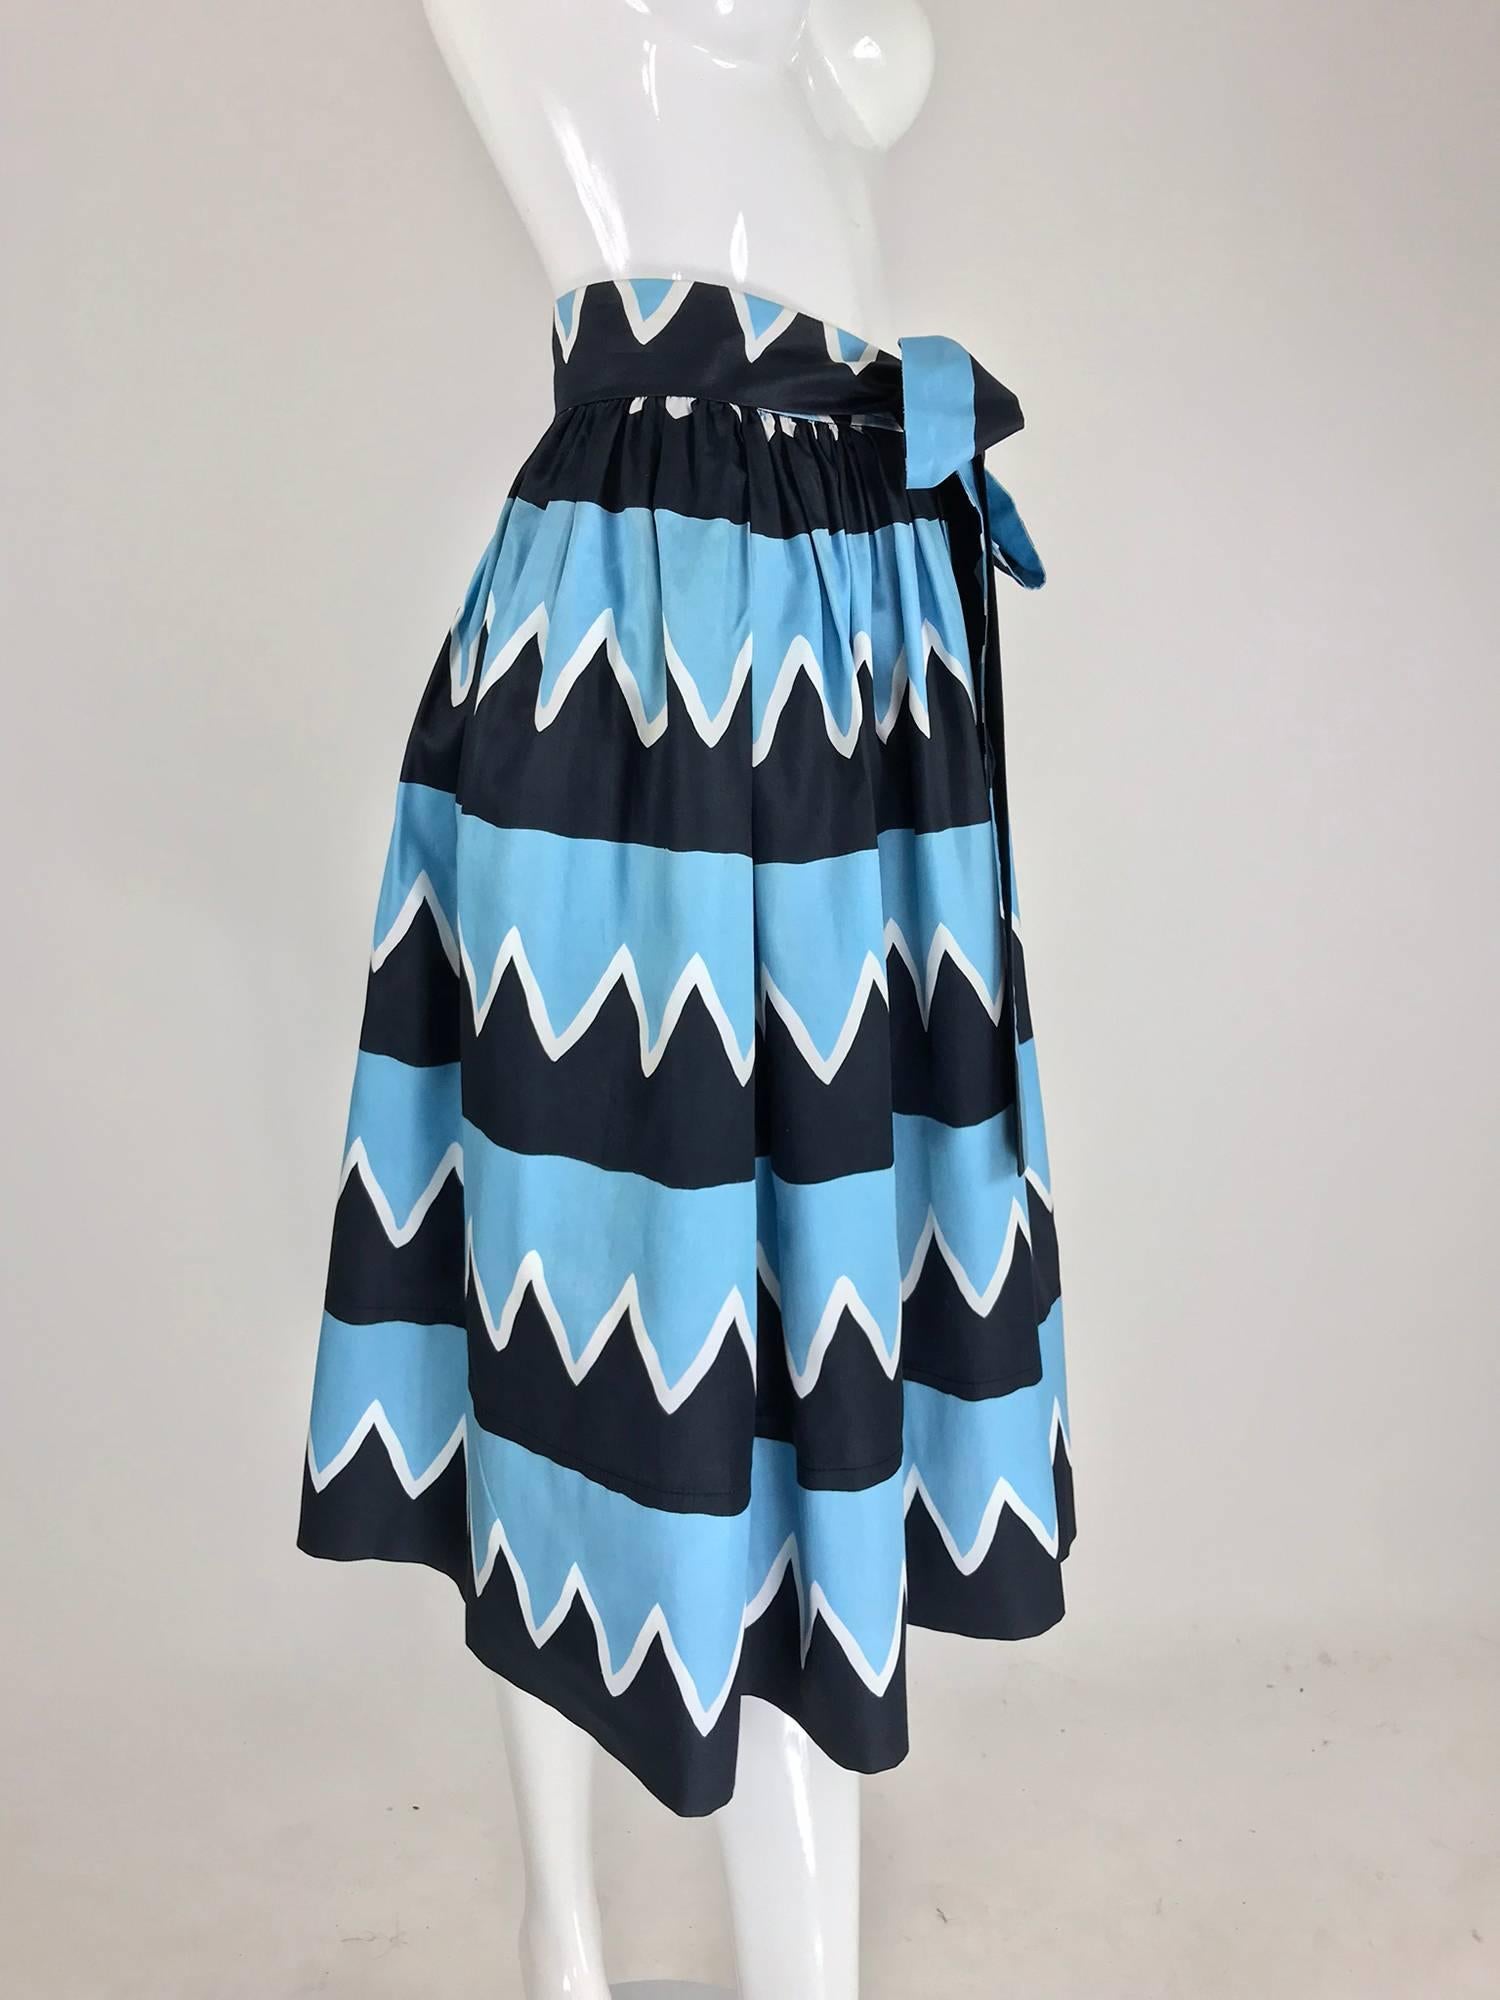 Black Yves Saint Laurent Iman worn documented cotton skirt, S / S 1980